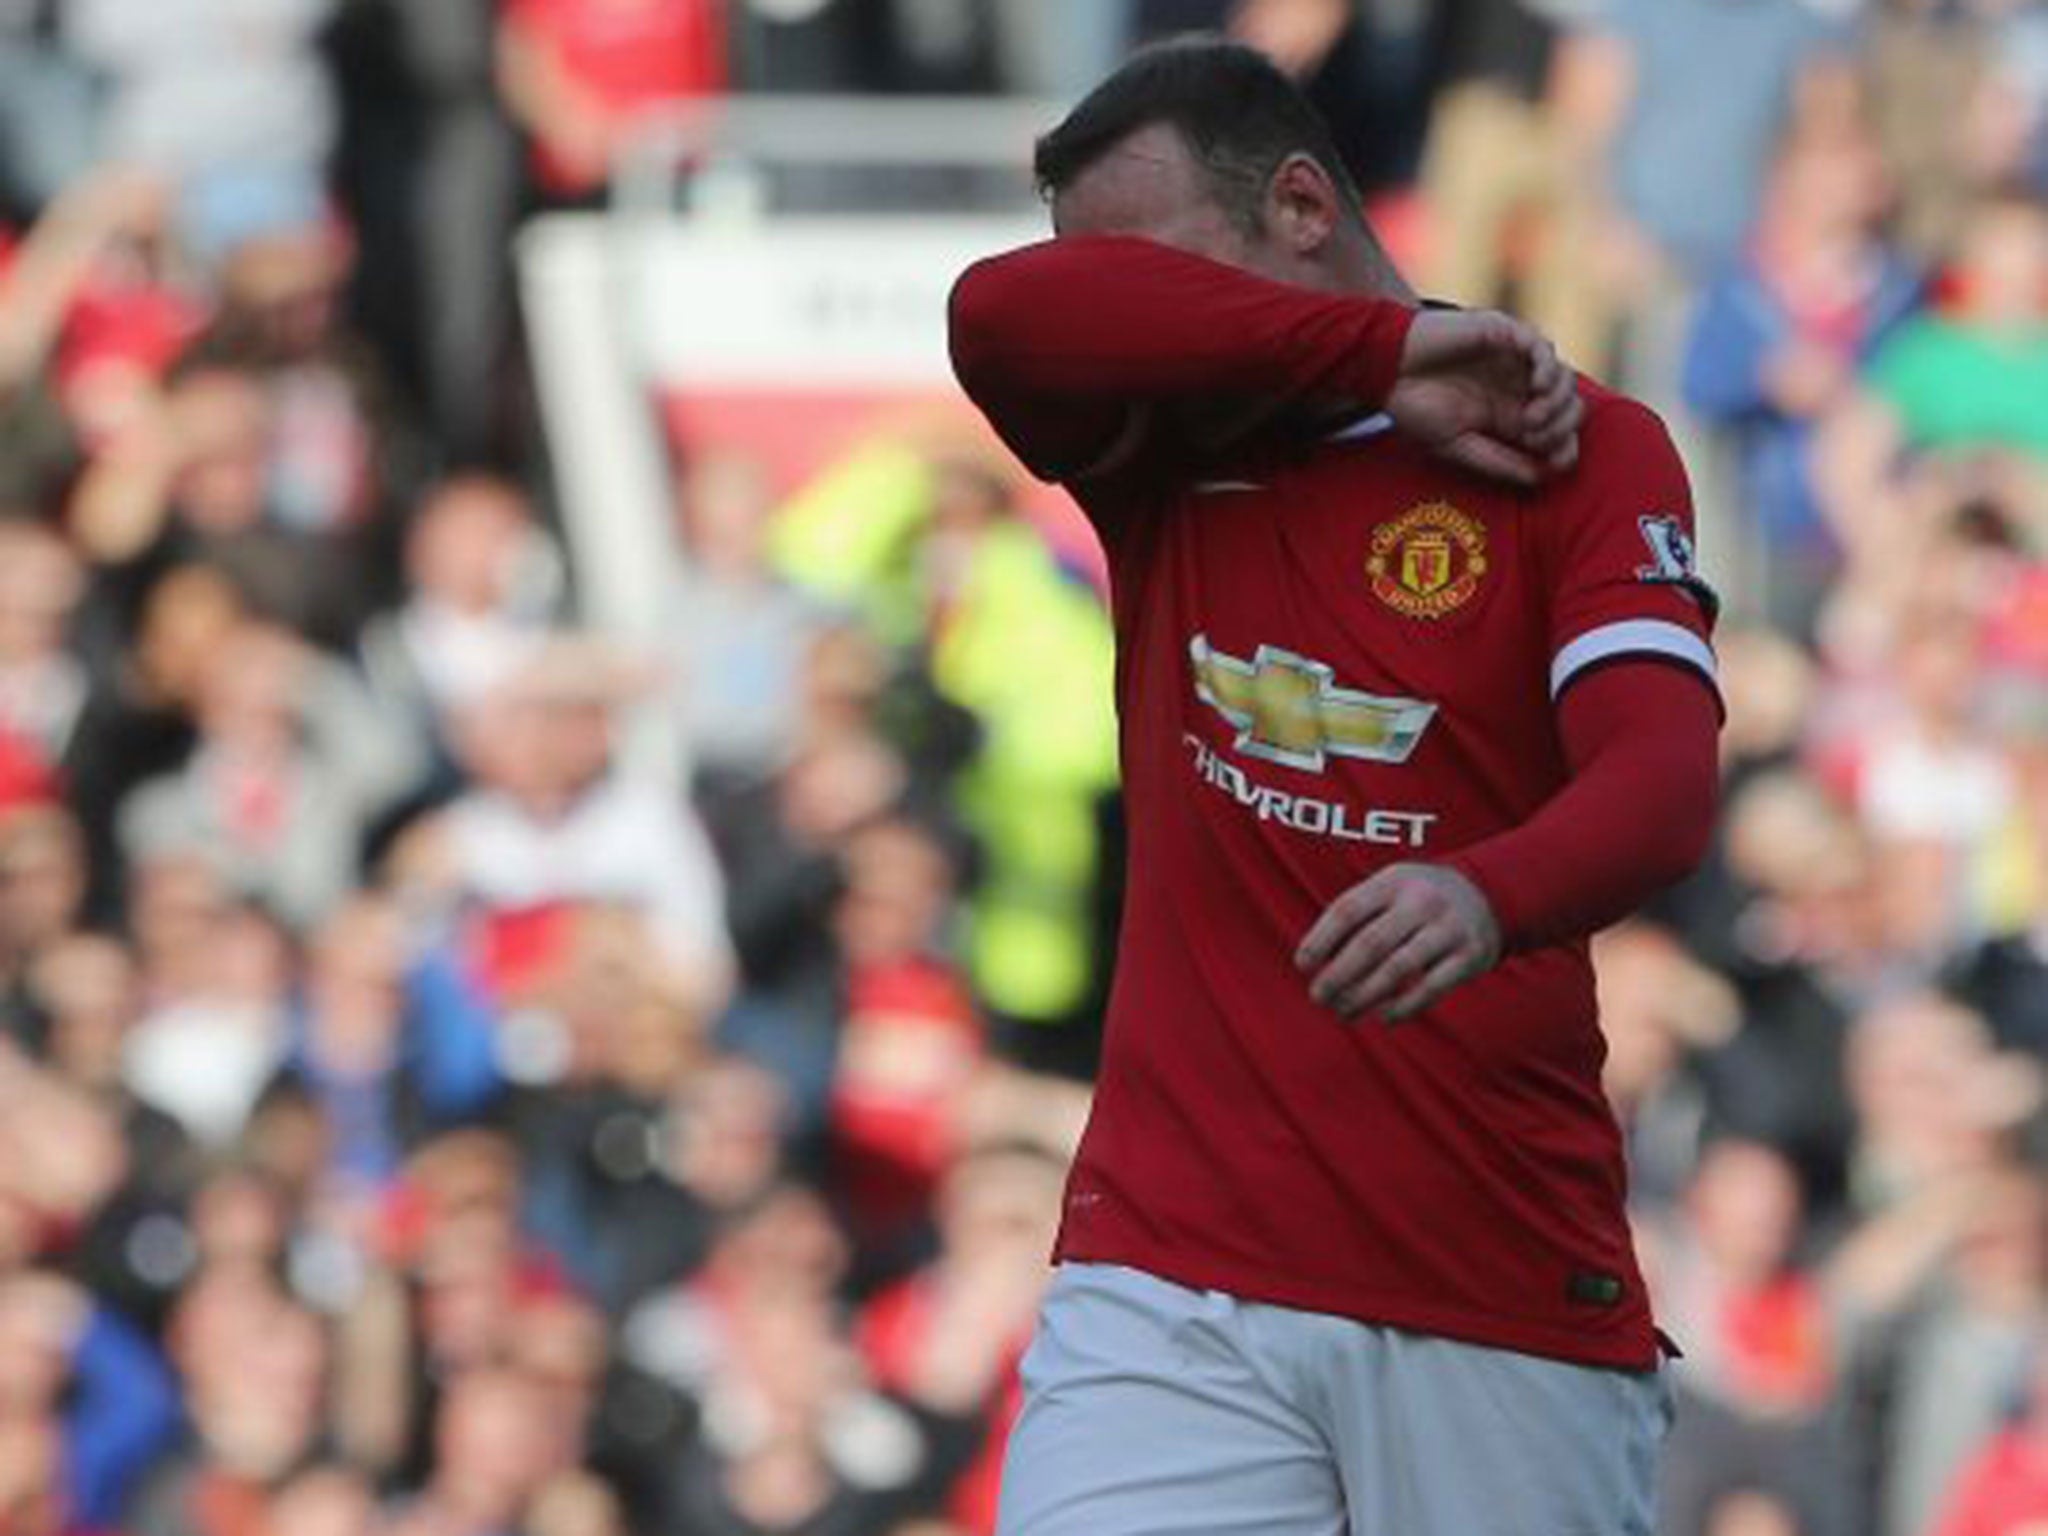 Wayne Rooney feels the pain of being sent off last against West Ham United last week